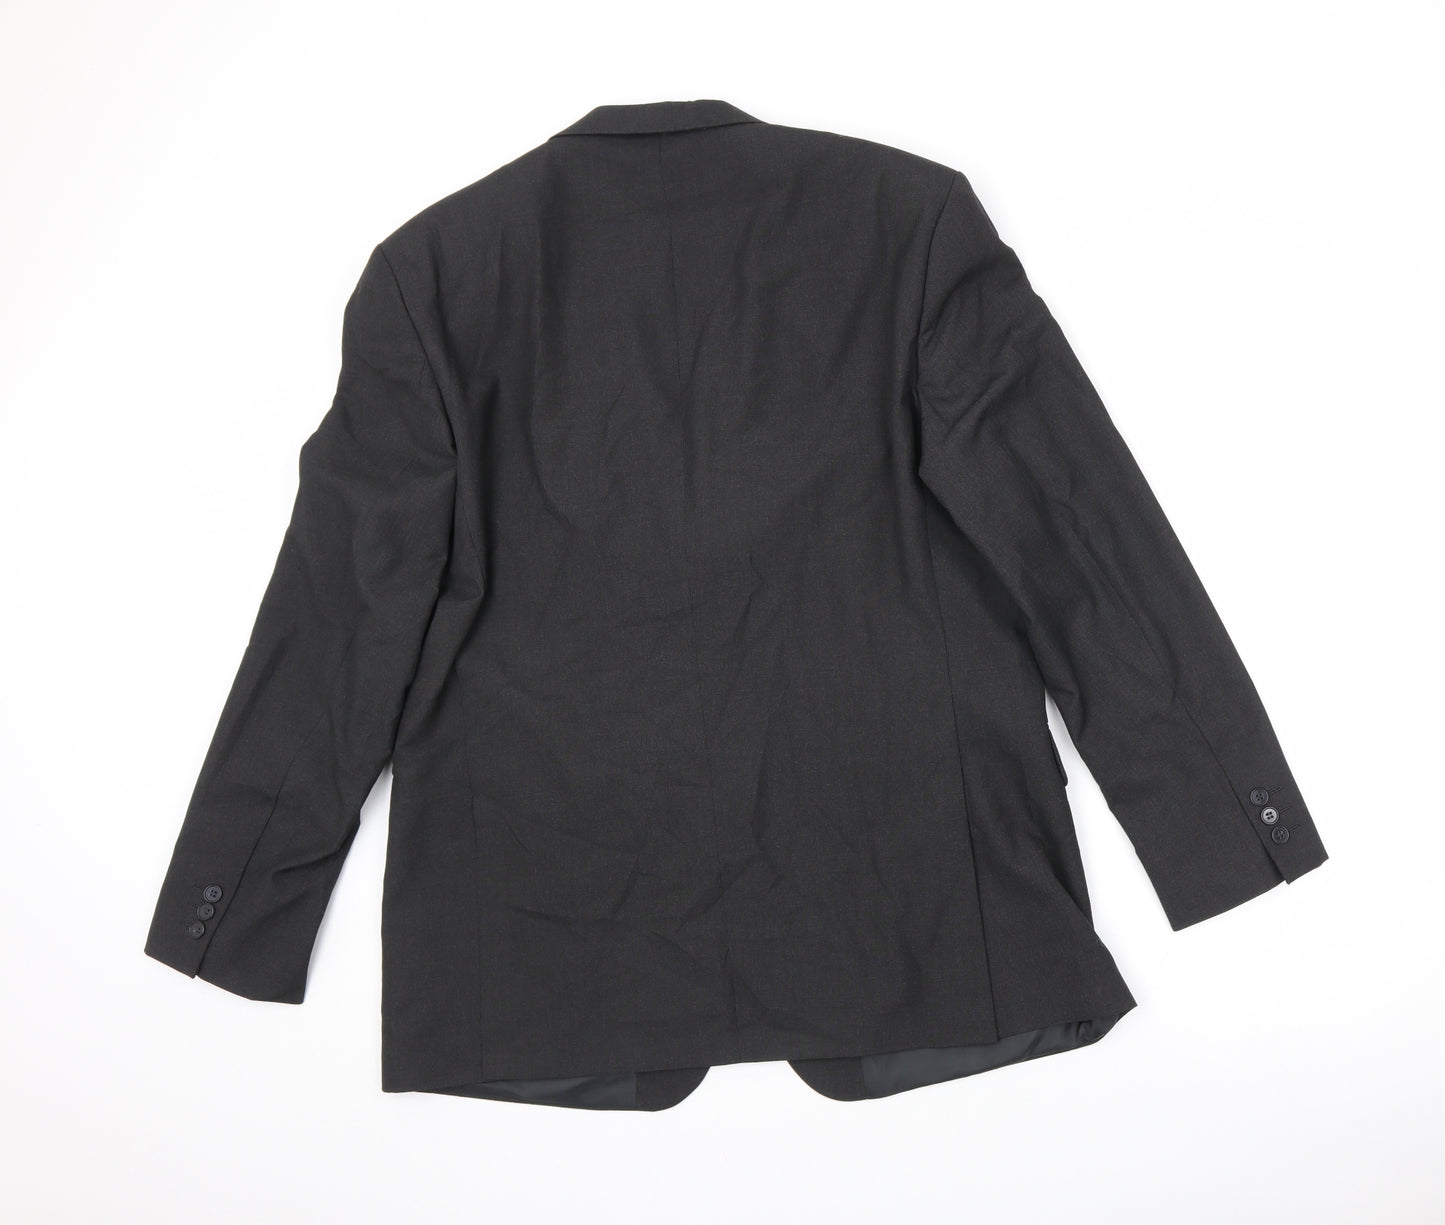 Karl Jackson Mens Black Polyester Jacket Suit Size 44 Regular